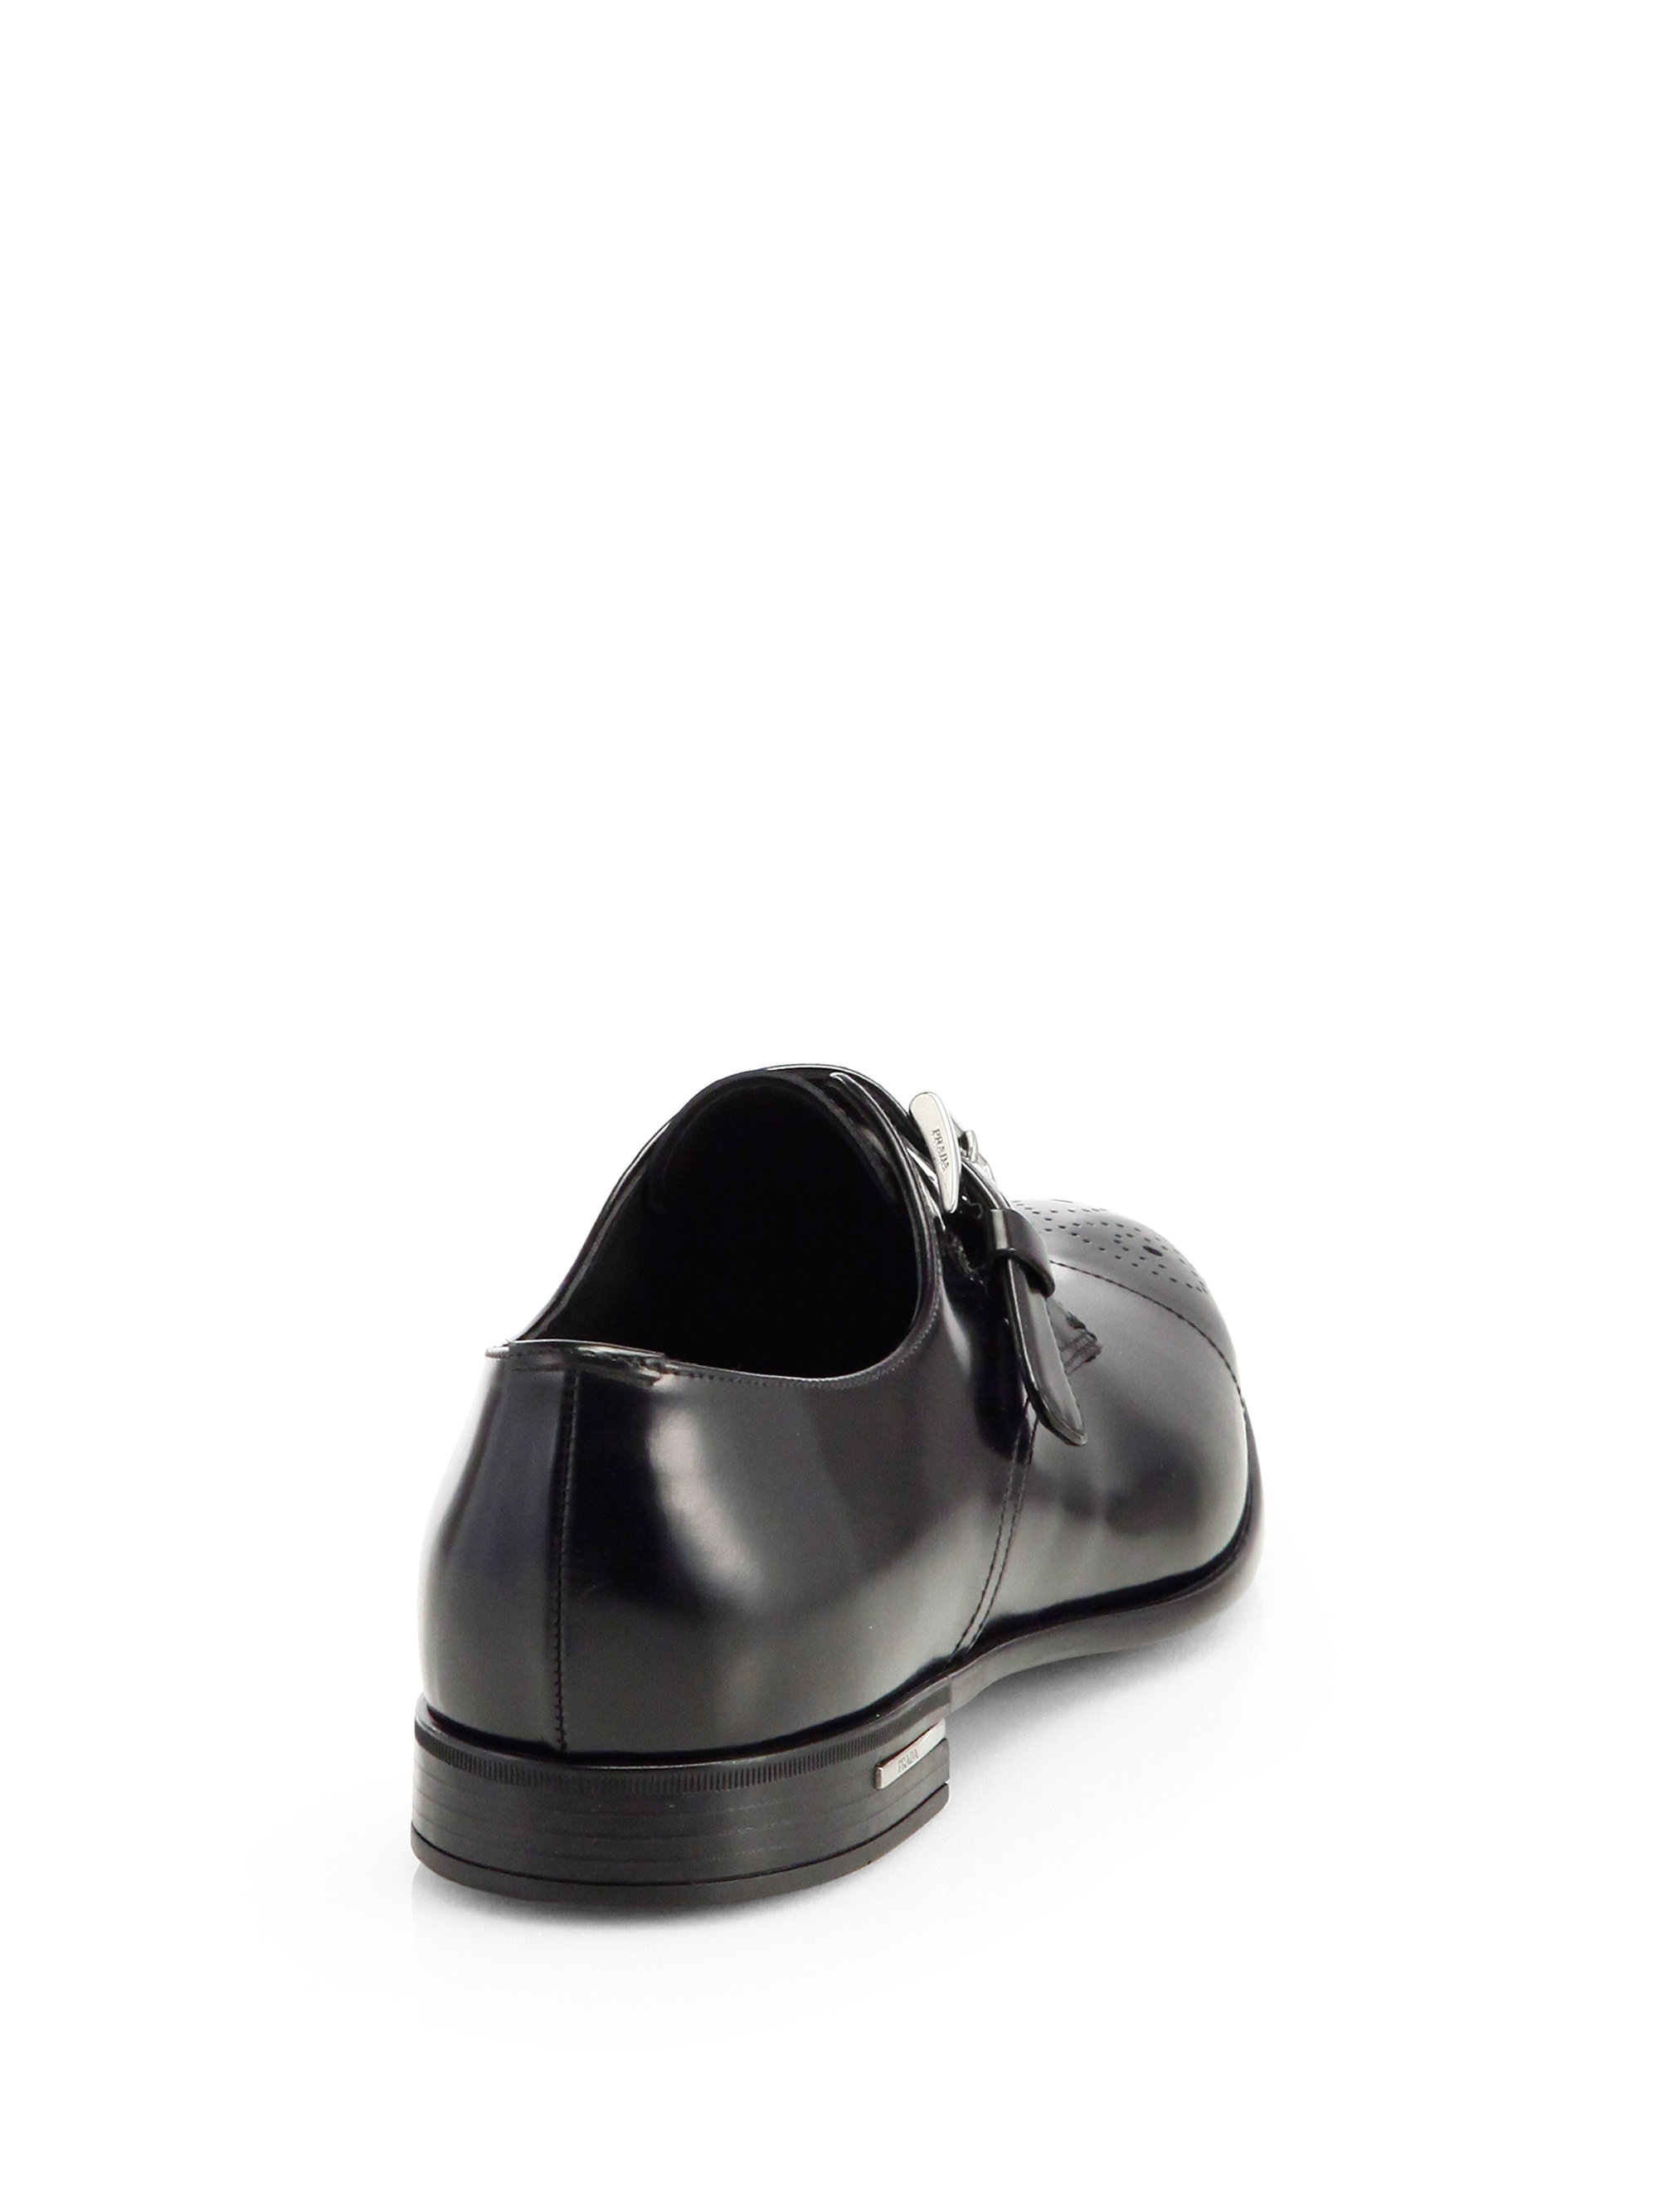 Lyst - Prada Spazzolato Monk Strap Loafers in Black for Men